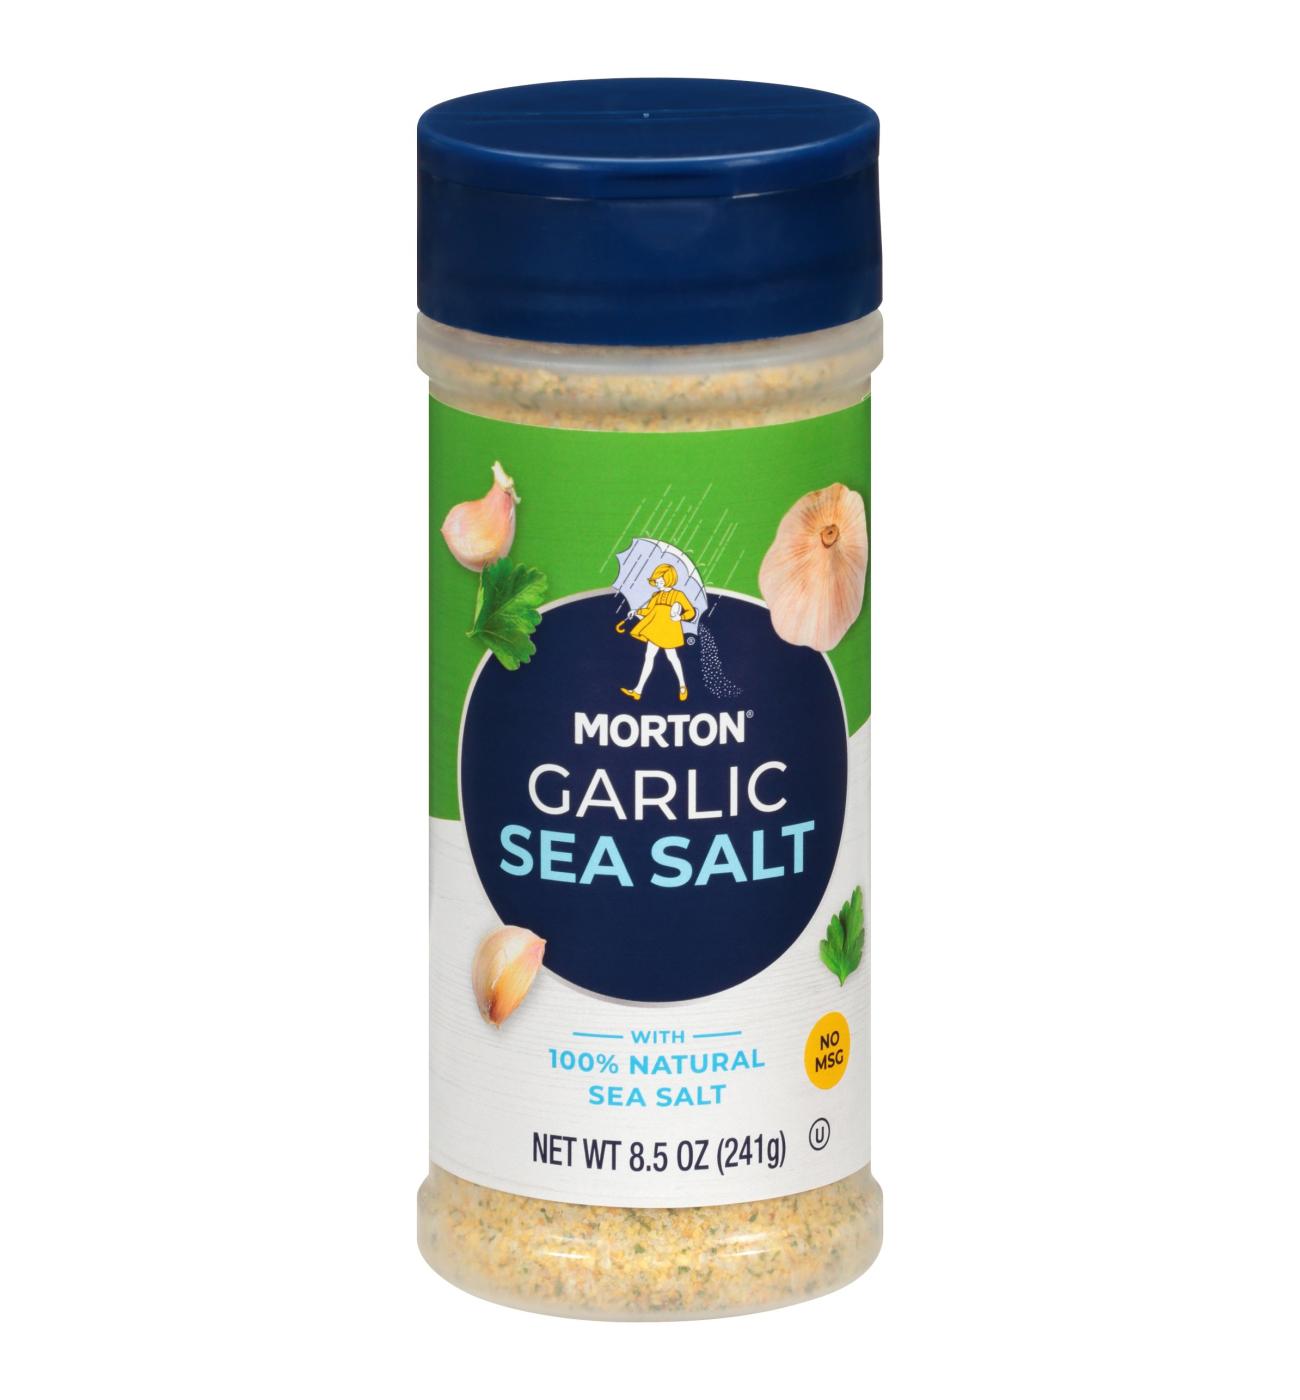 Morton Garlic Sea Salt; image 1 of 6